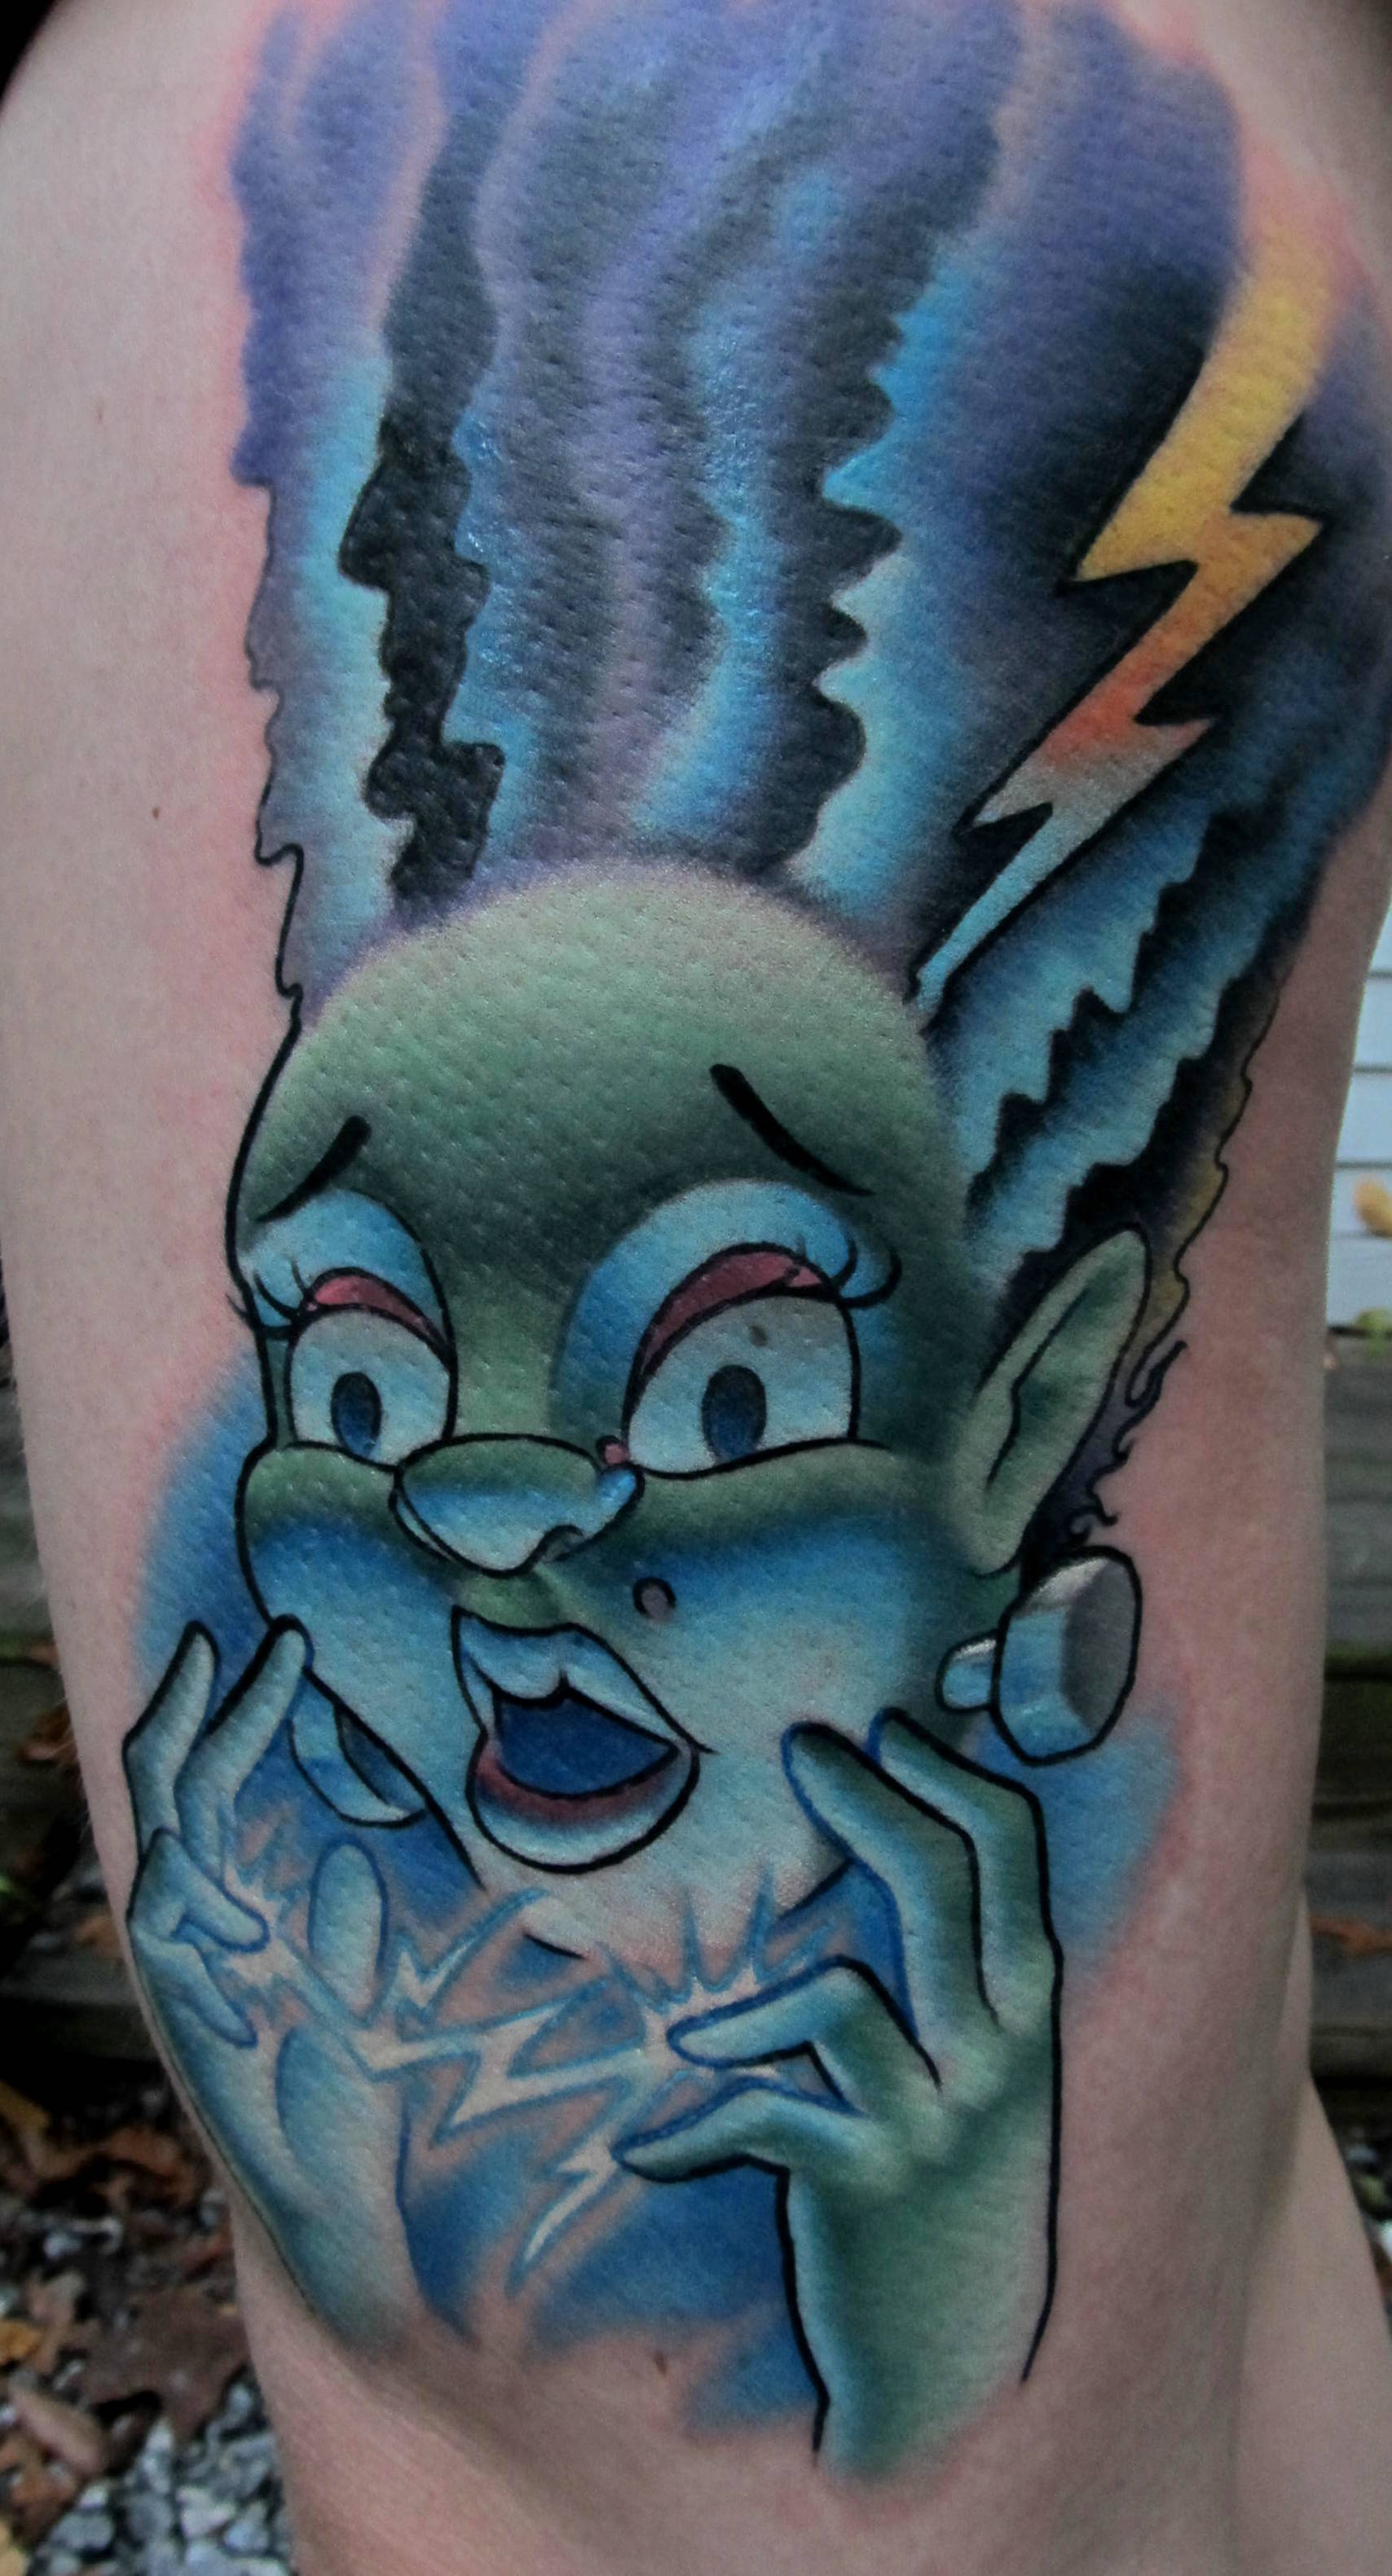 Bride of Frankenstein Tattoo by Connecticut tattoo artist Cracker Joe Swider